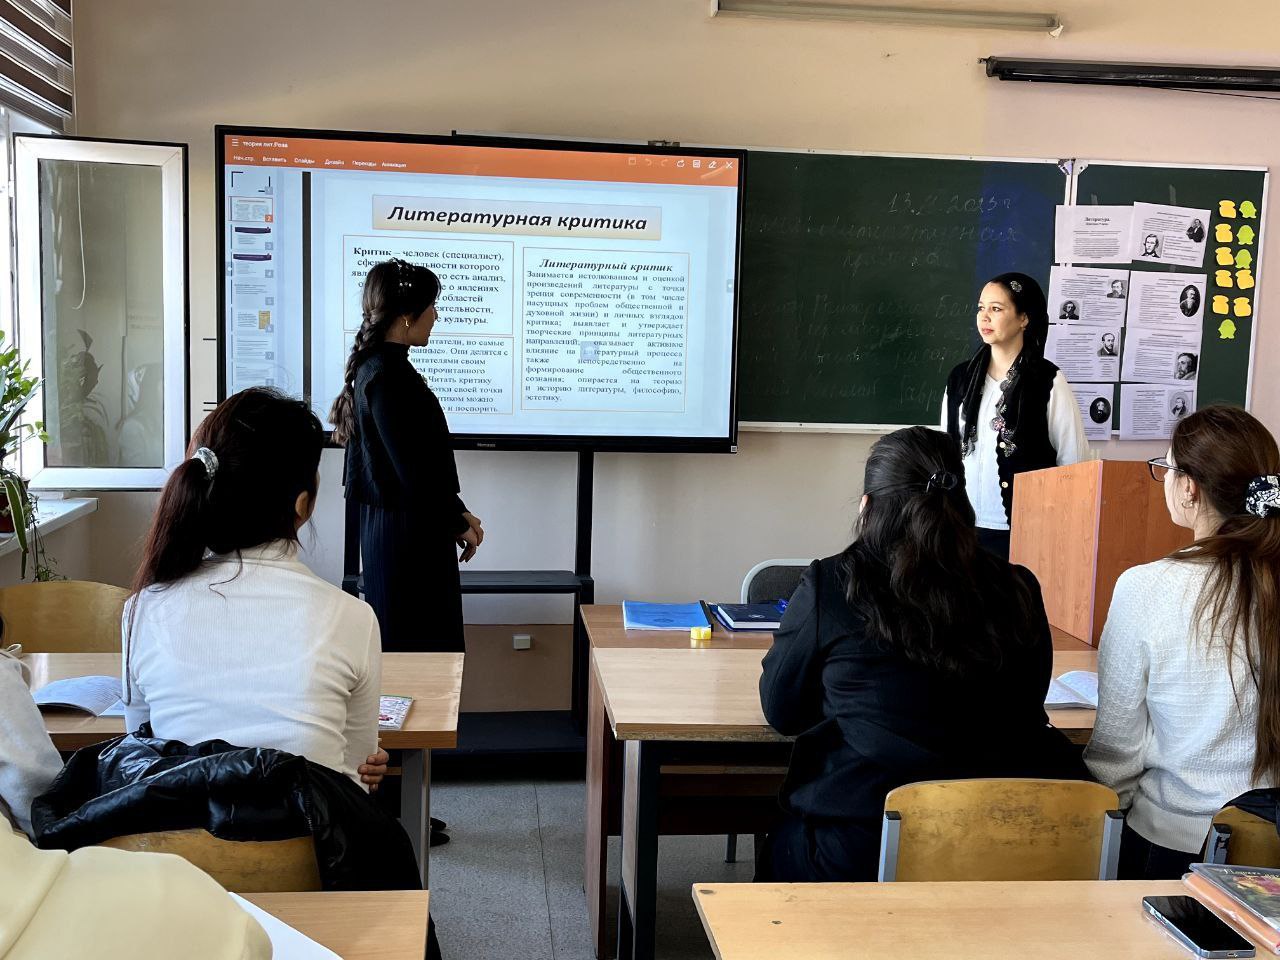 Студенты активно участвовали в открытой практике по теме «Литературно-критика».